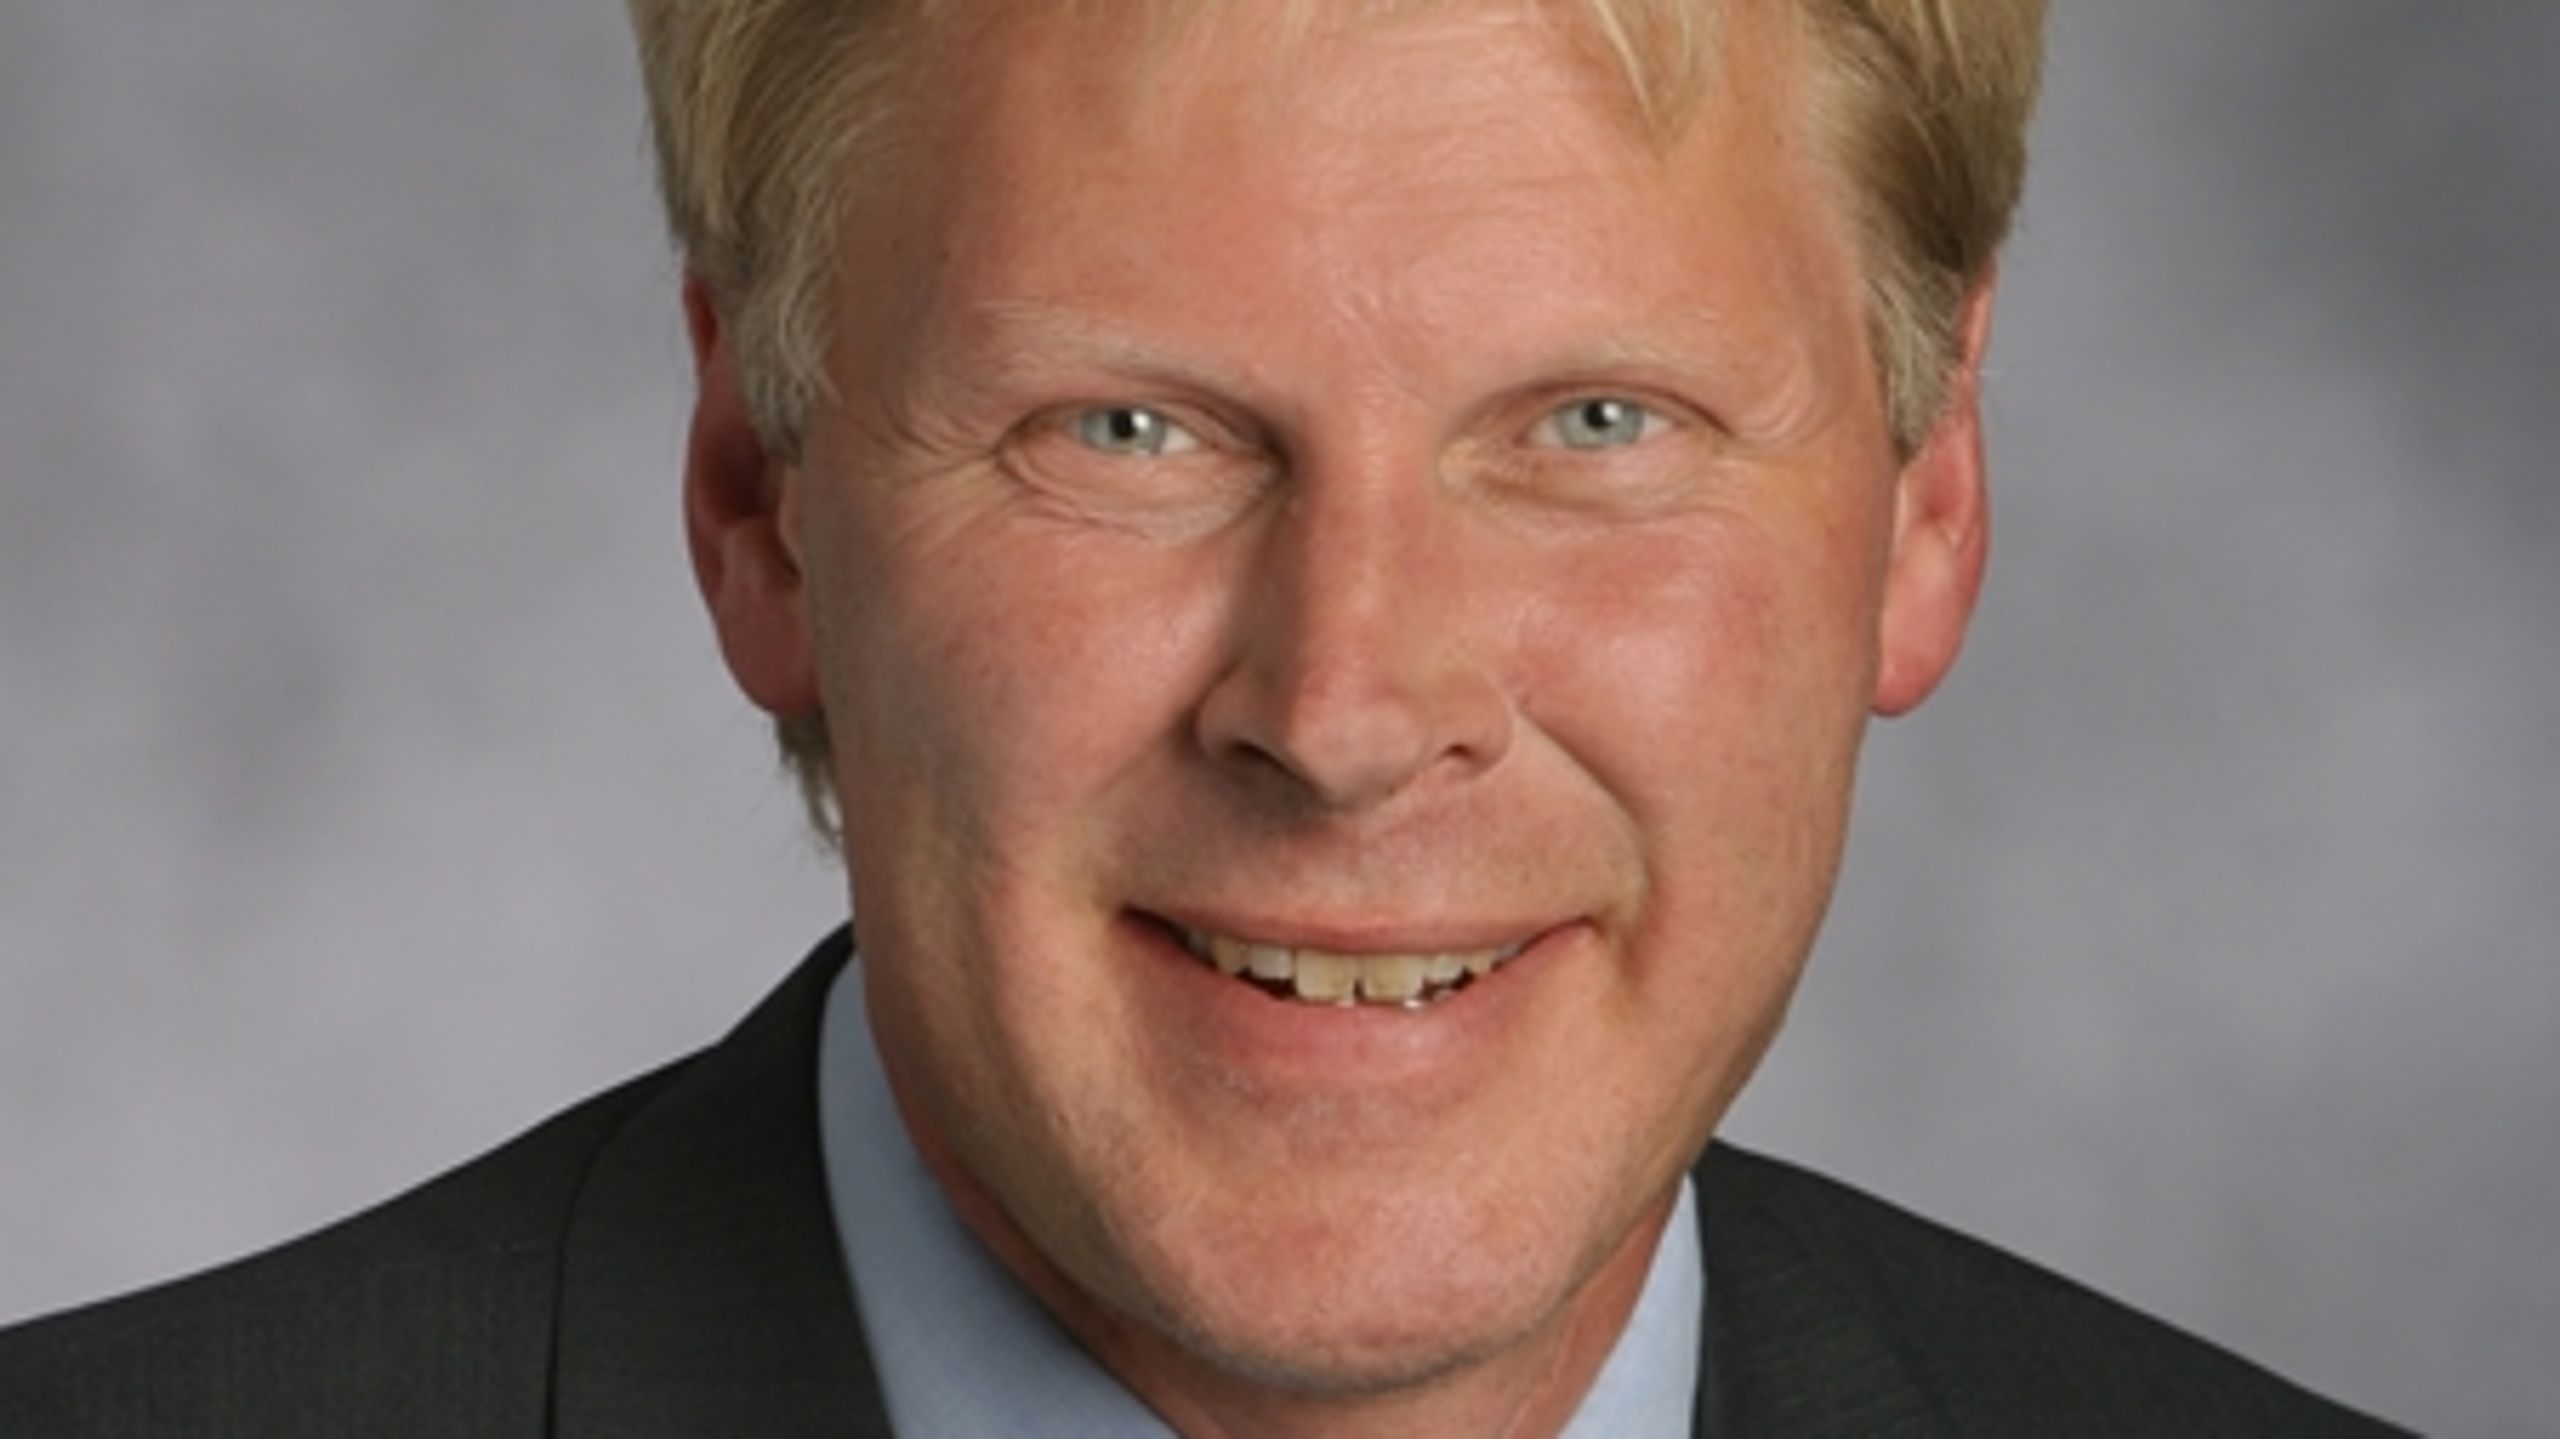 Ole Linnet Juul, branchedirektør i DI Fødevarer.